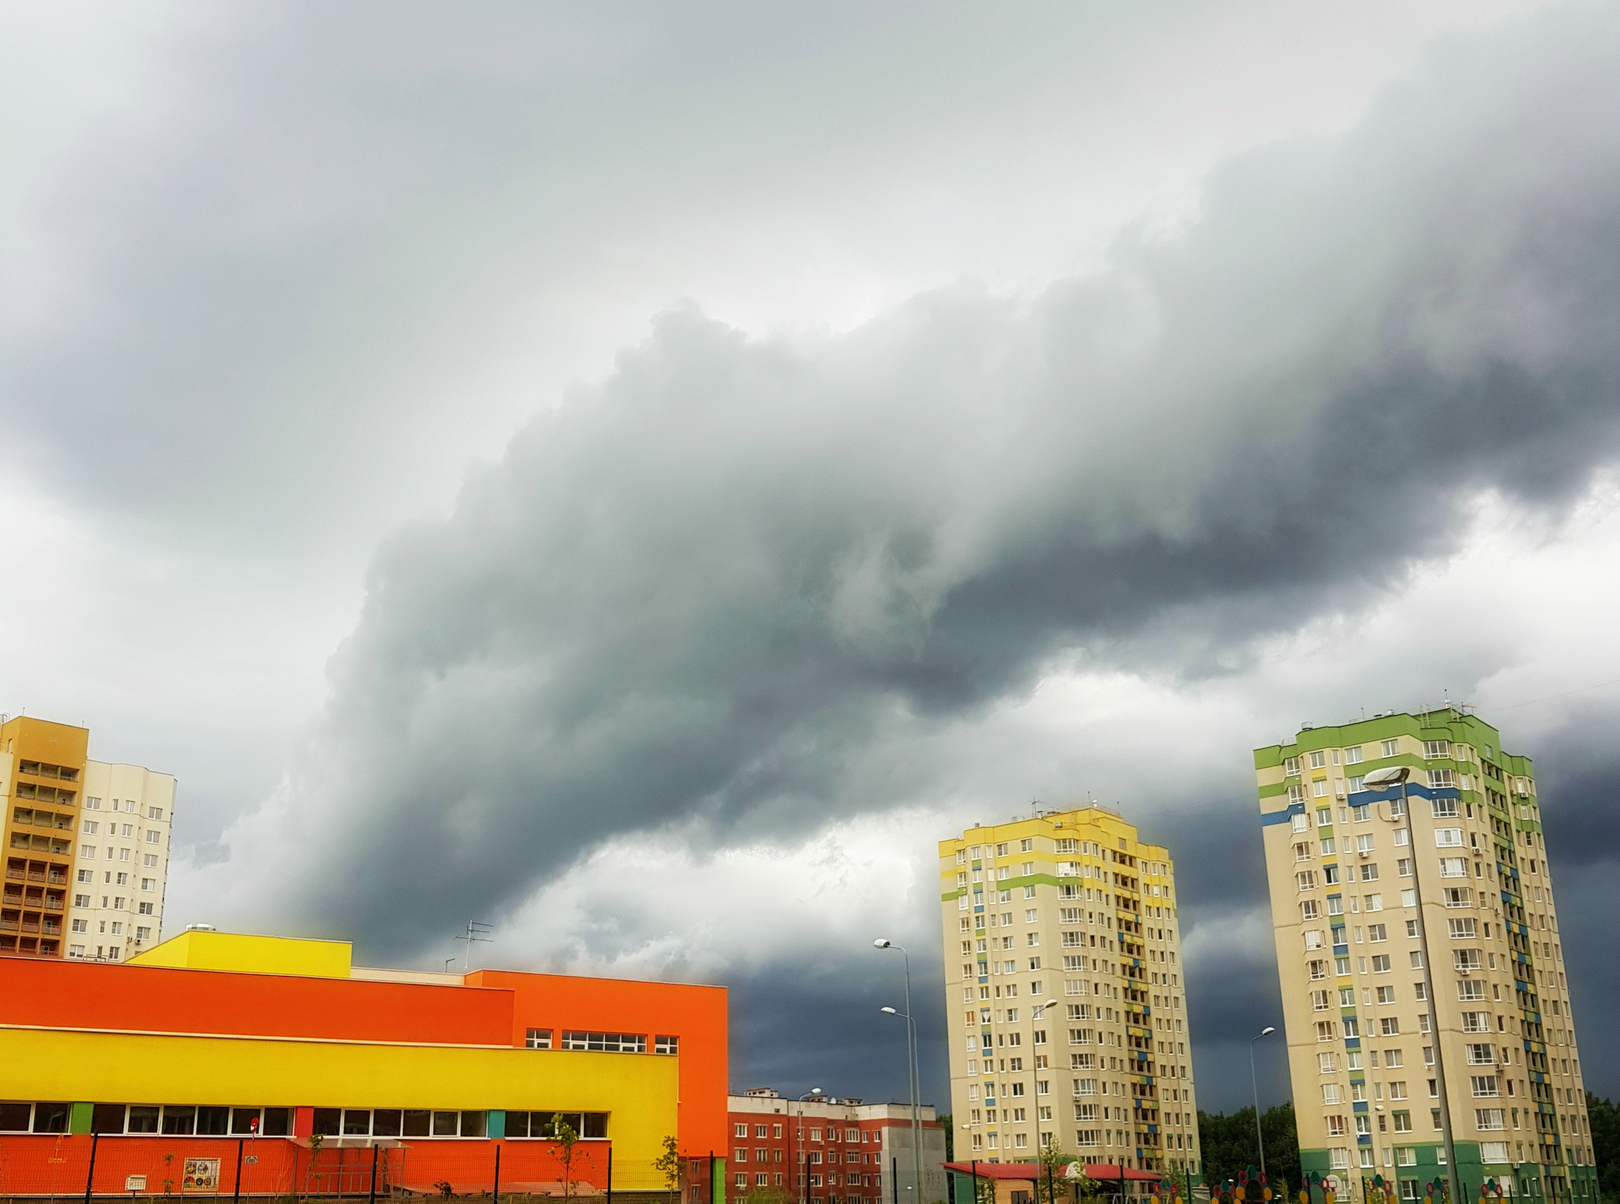 Пасмурно и зрелищно: нижегородцы поделились фотографиями неба перед дождем - фото 2